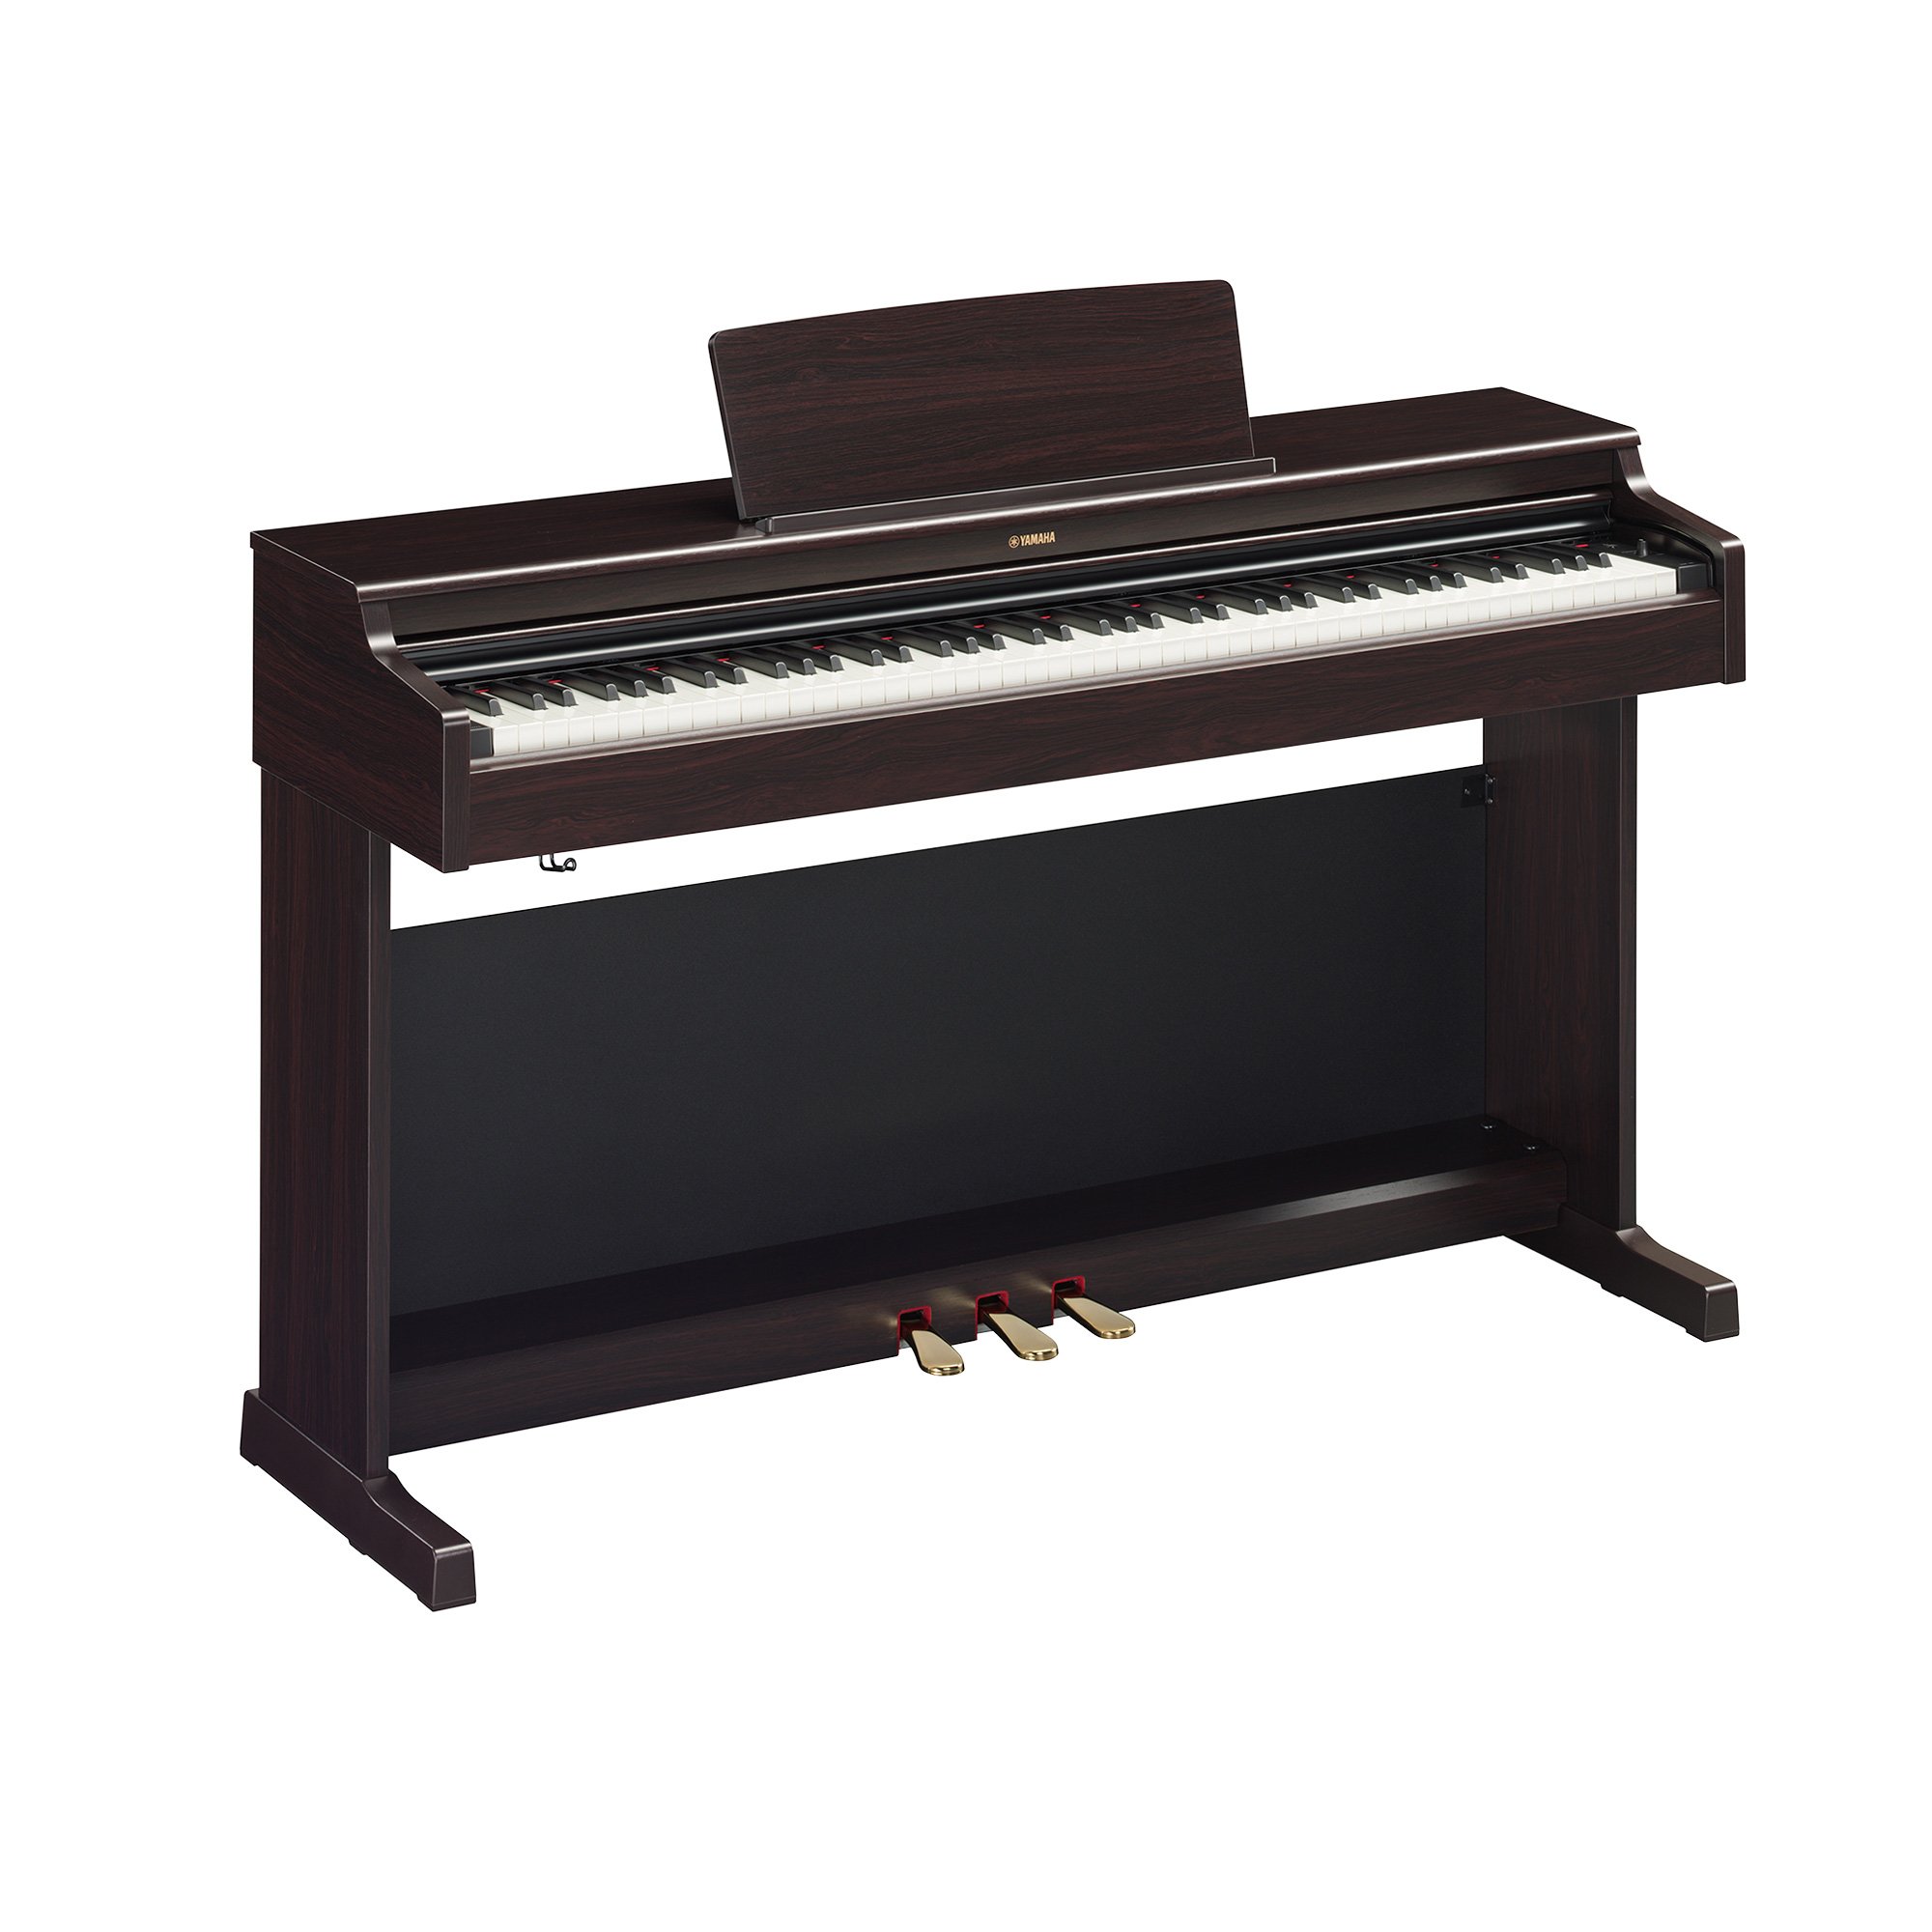 雅马哈数码钢琴 YDP-165R